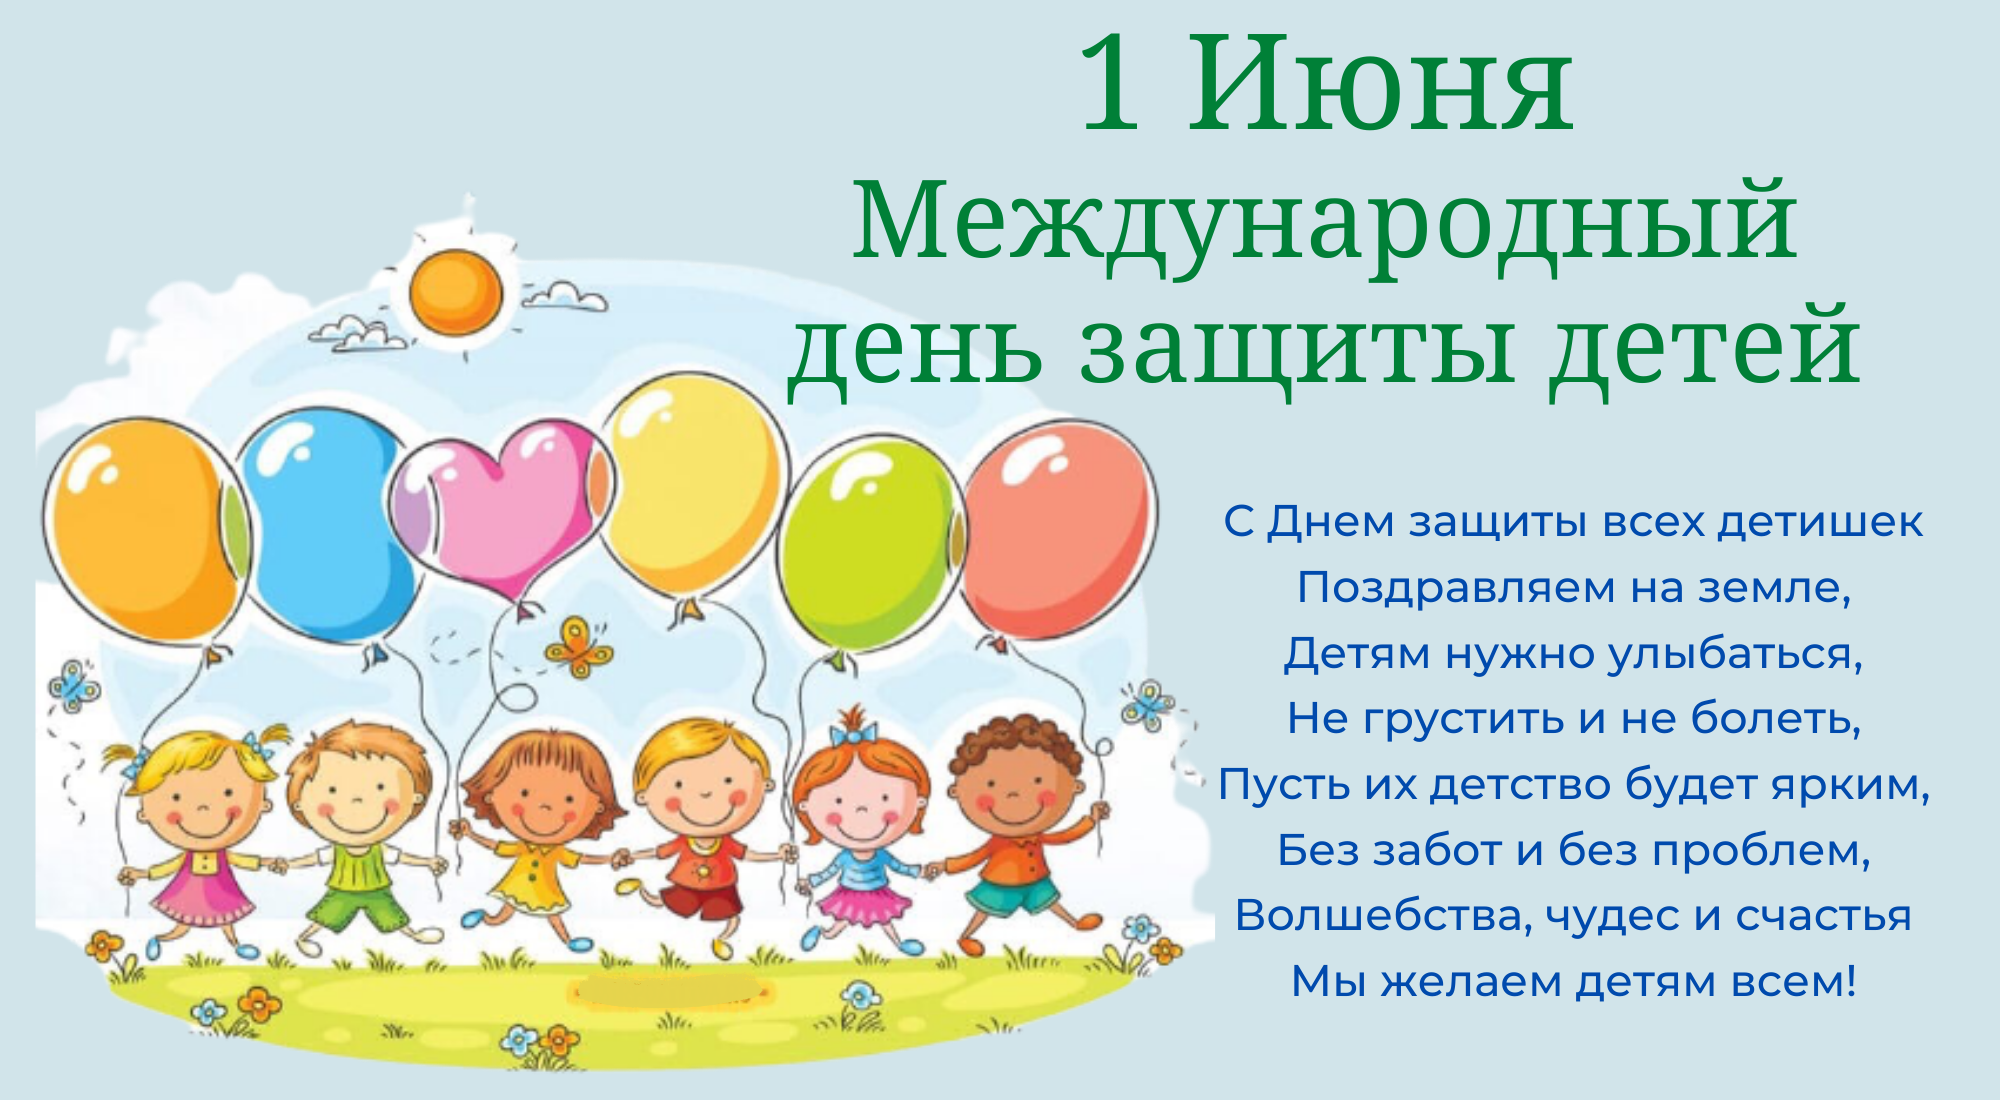 Международный день защиты детей 